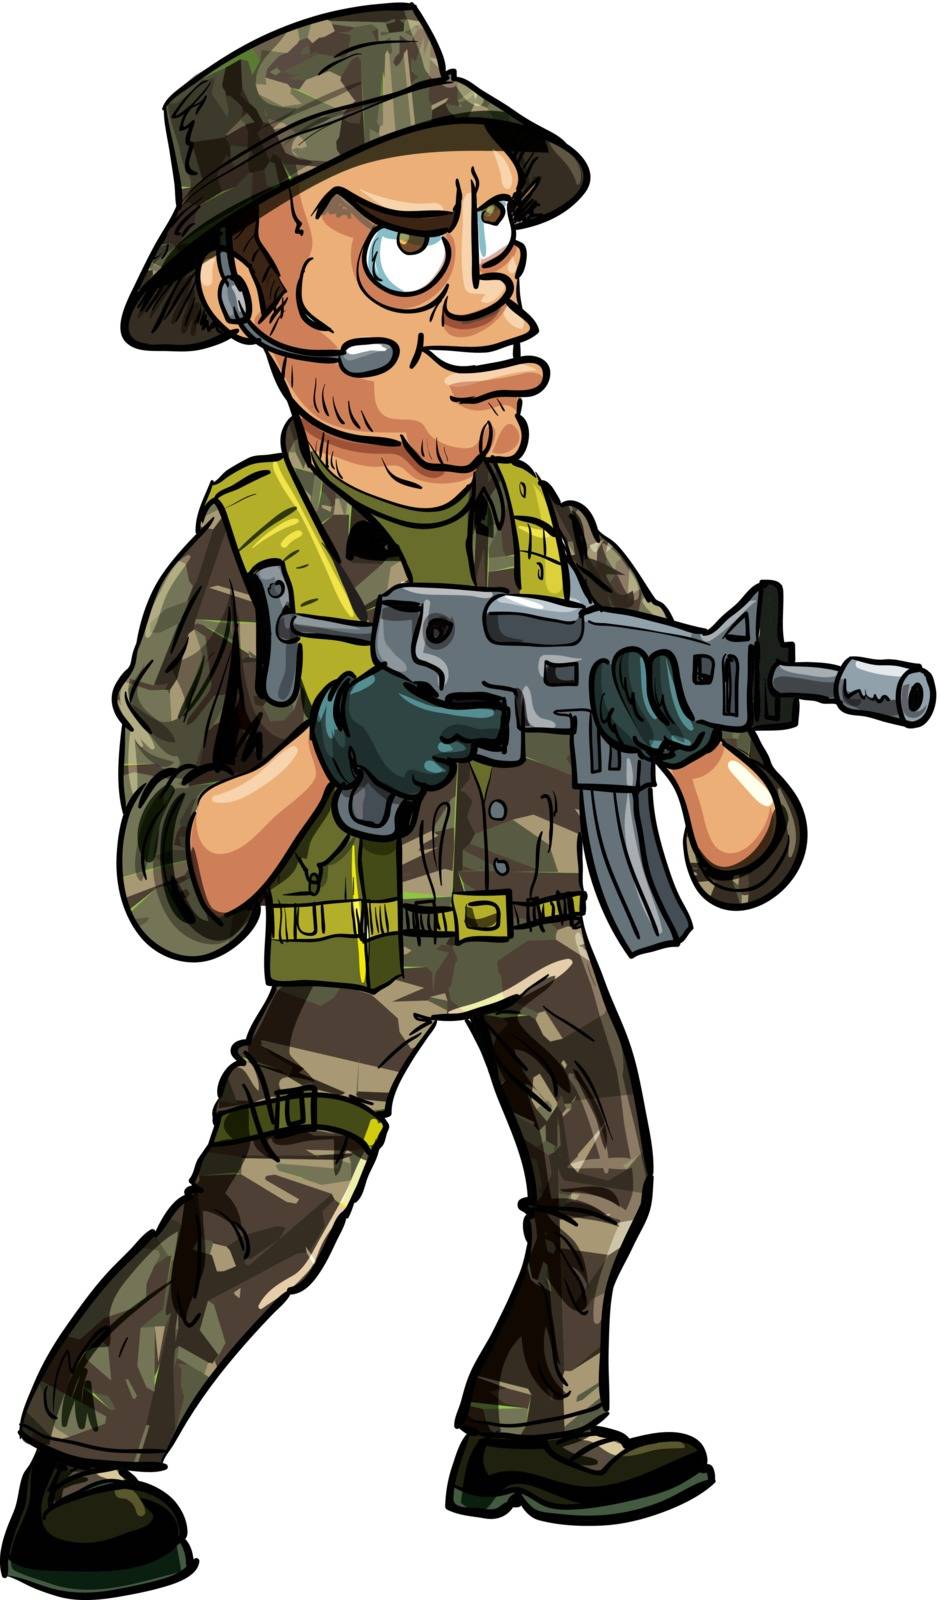 Soldier with sub machine gun by antonbrand